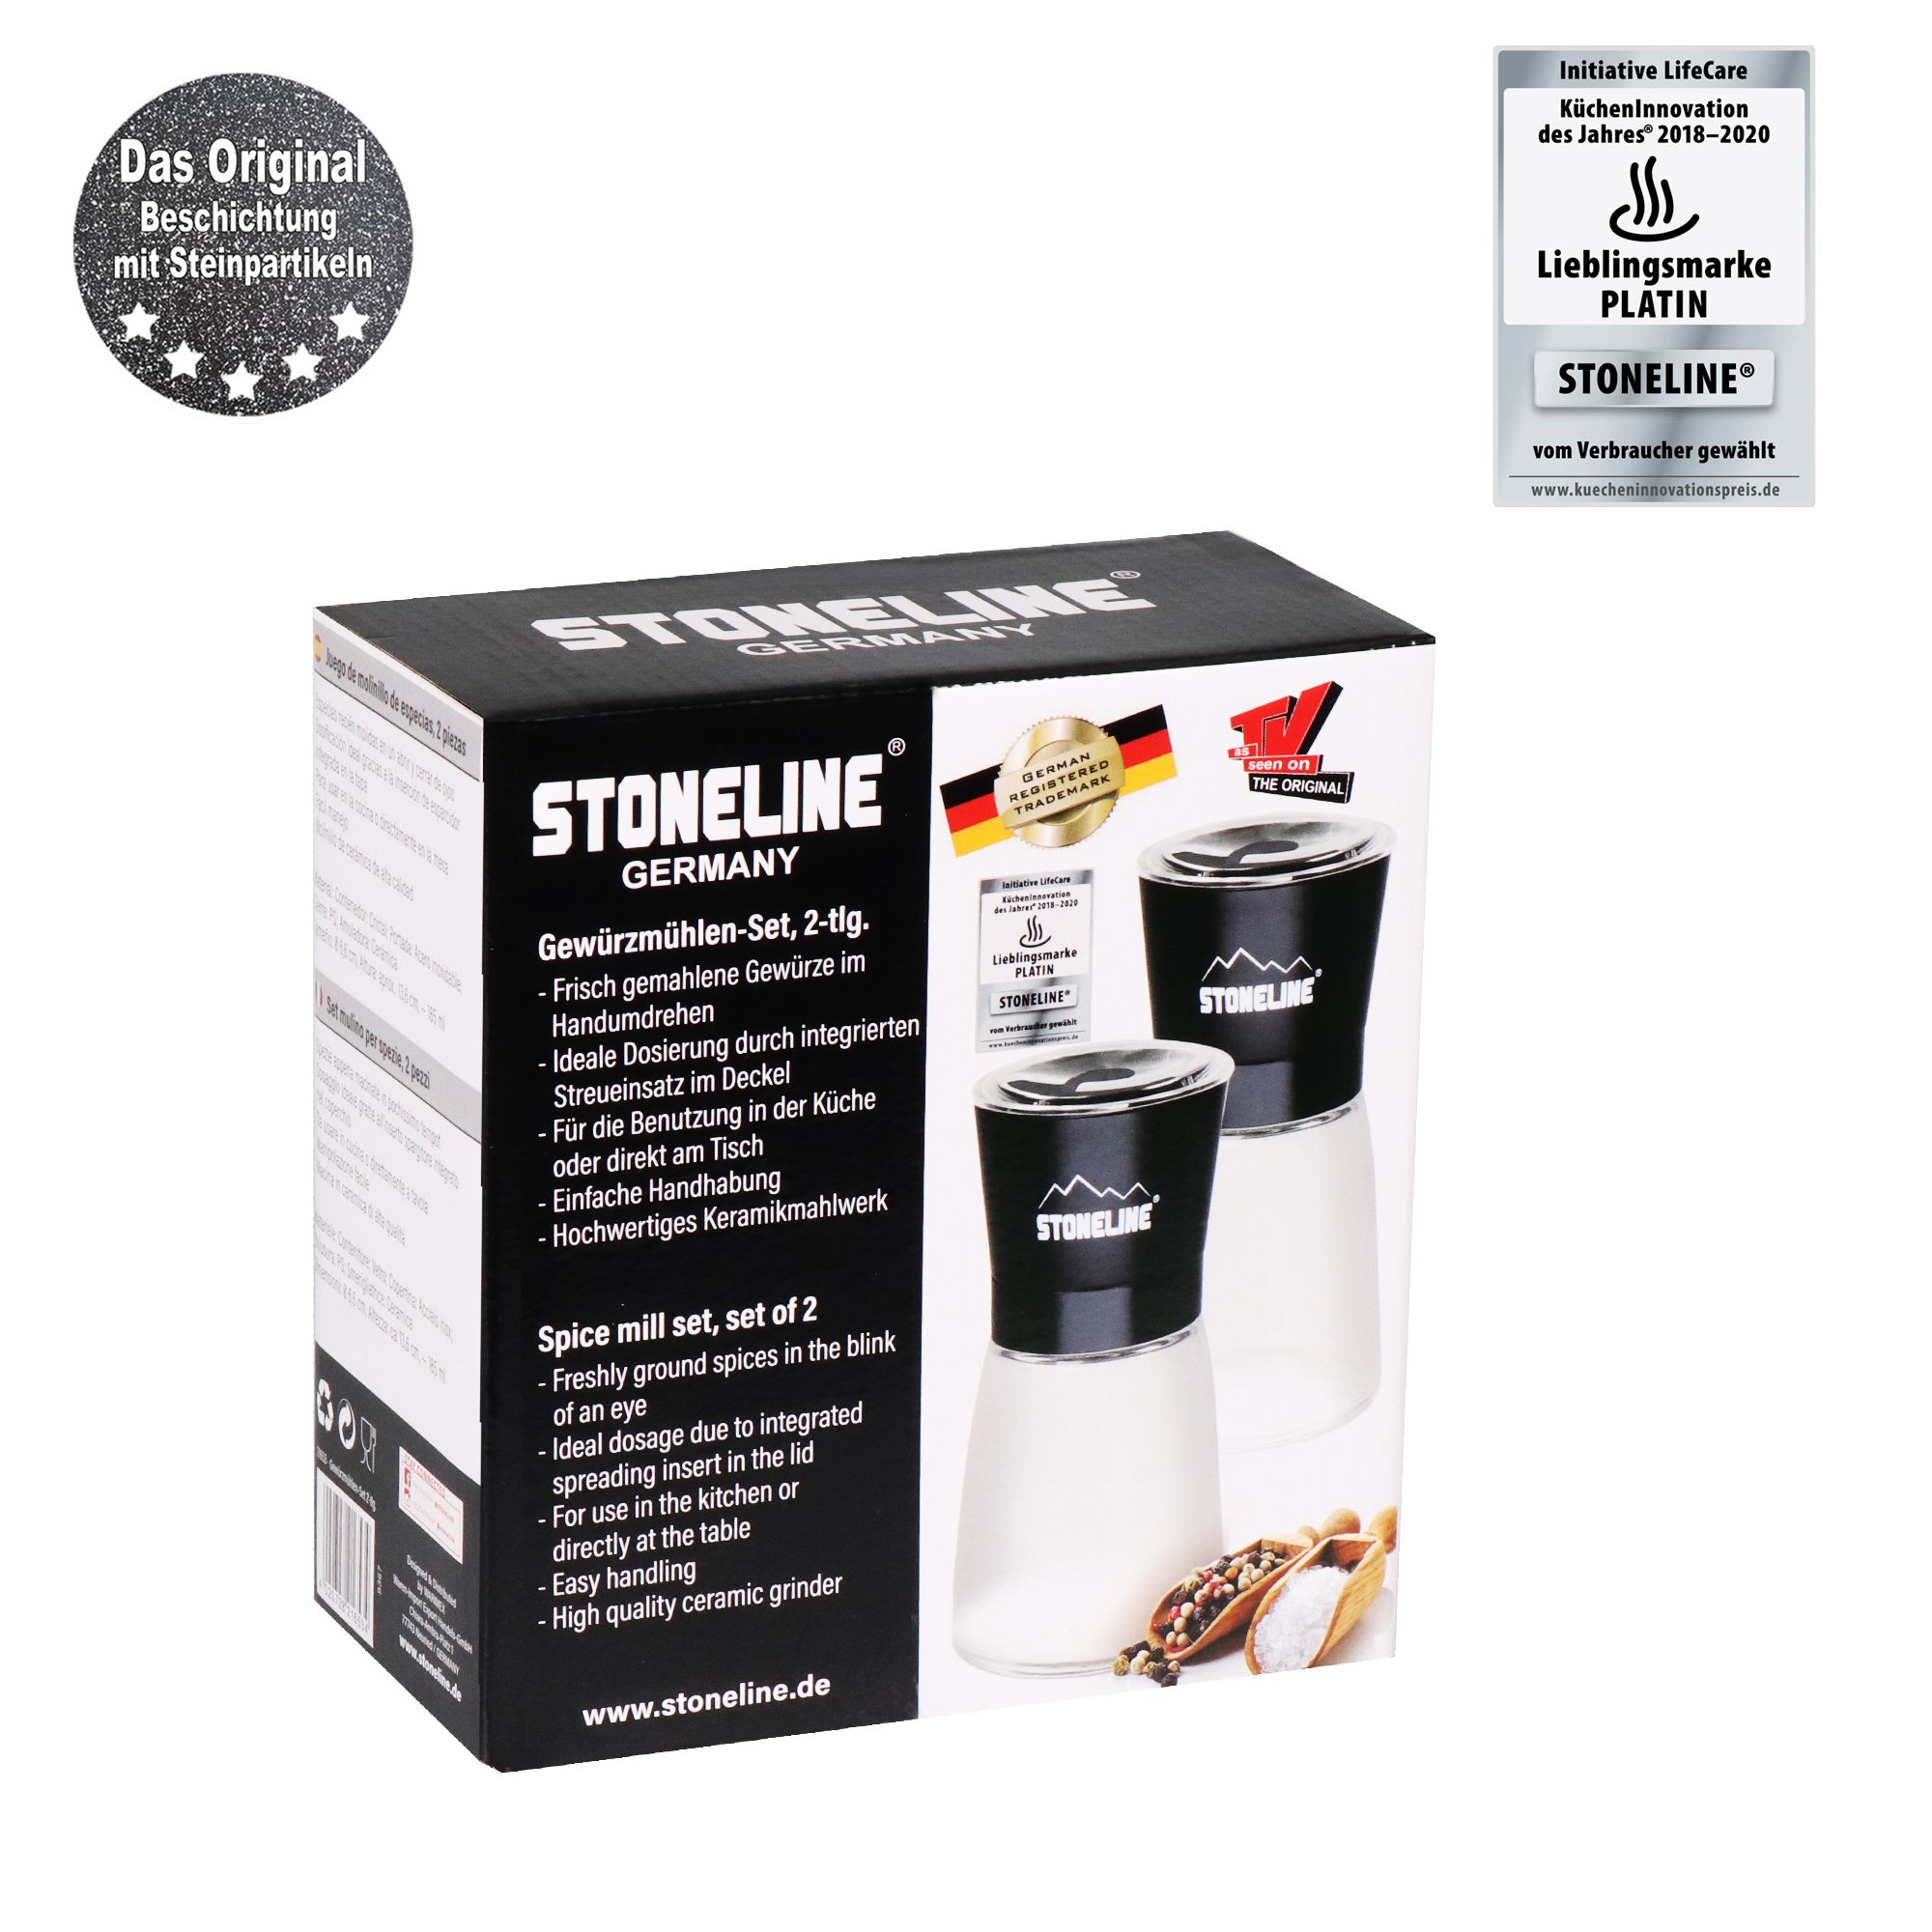 STONELINE® 2 pc Salt and Pepper Mill Set, Adjustable Ceramic Grinder, Refillable